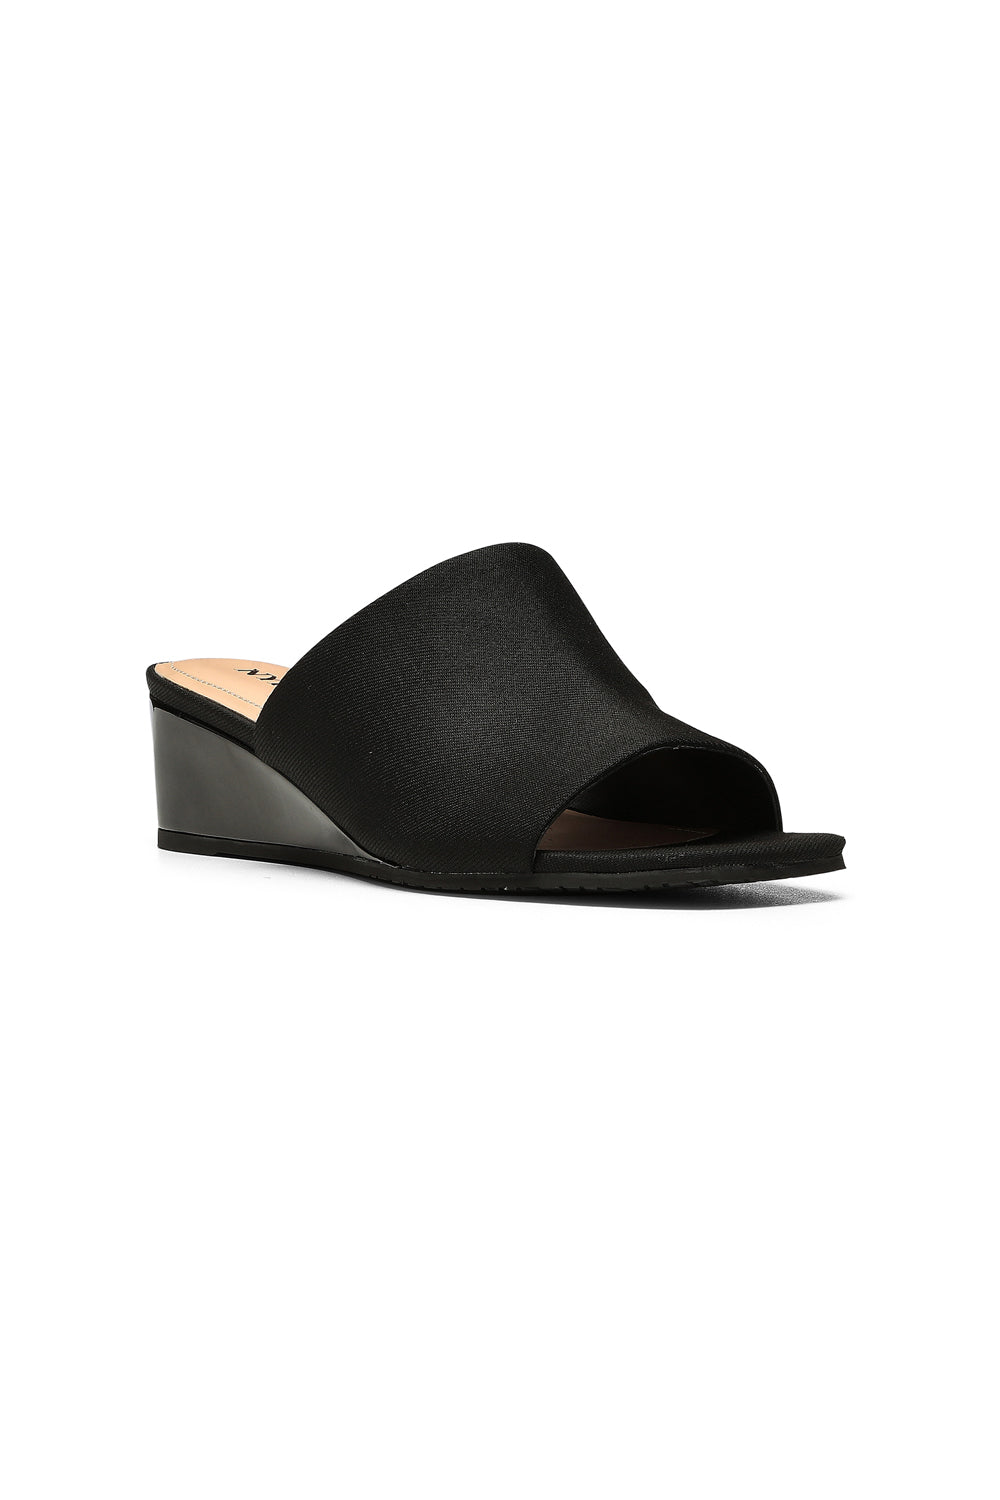 NYDJ Claudine Wedge Mule Sandals In BlackLast™ Denim - Black